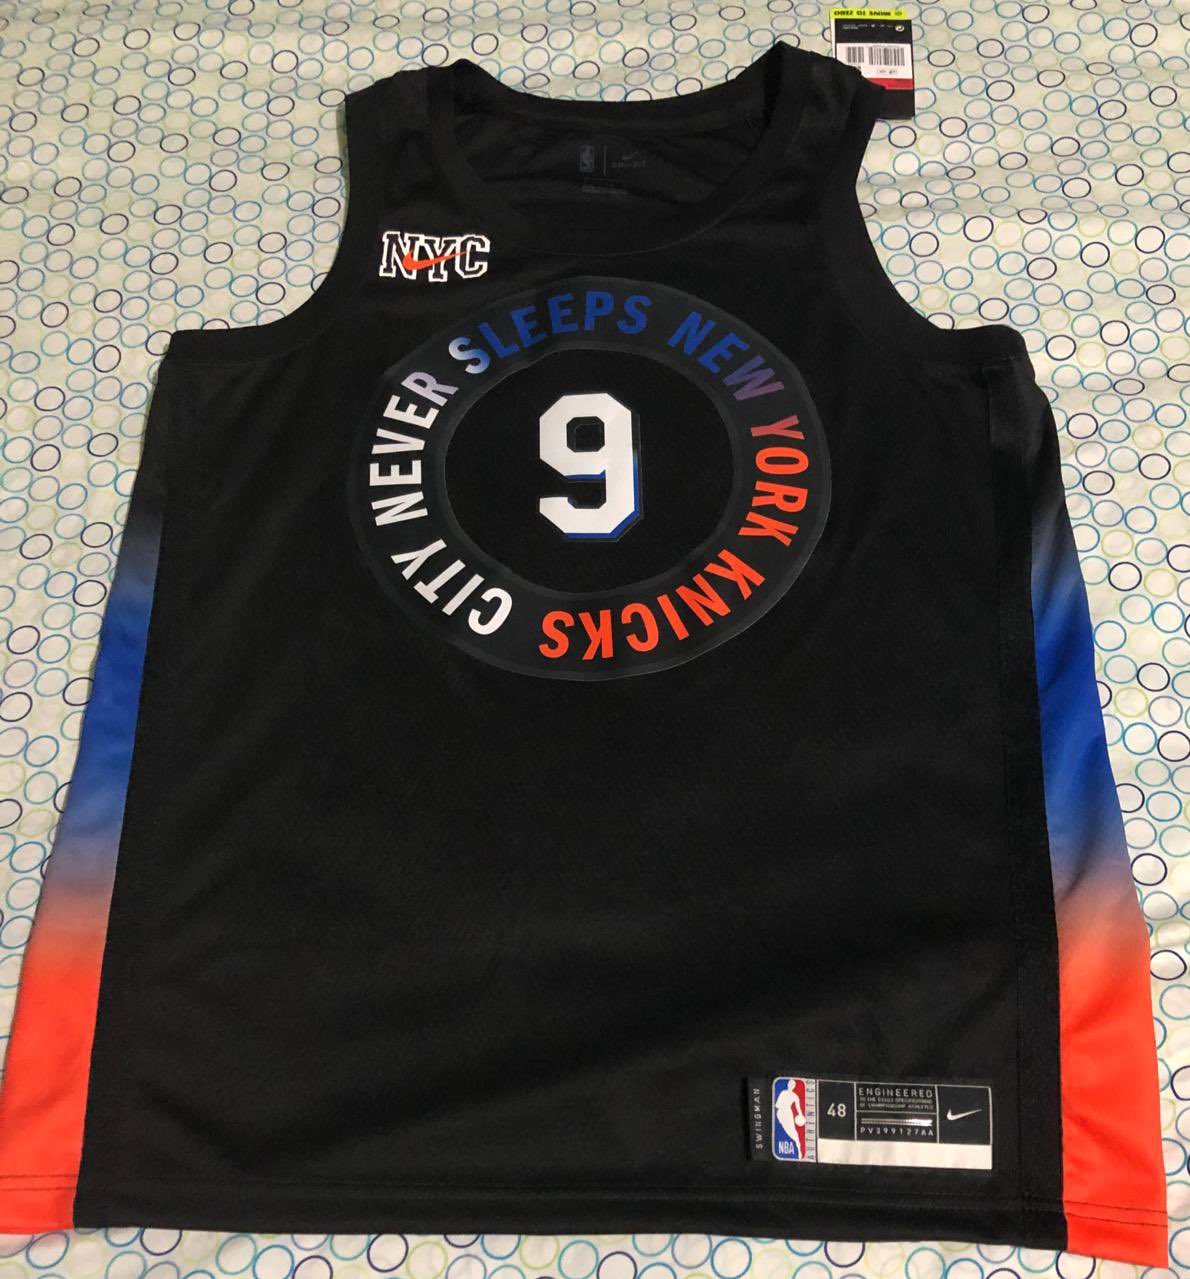 Chemise noire des New York Knicks, avec des détails bleus et orange sur les côtés et le logo sur la poitrine qui dit "CITY NEVER SLEEPS NEW YORK KNICKS".  Le logo Nike a les lettres NYC au dos.  La chemise numéro 9 est sur un lit et le couvre-lit a des motifs à pois.